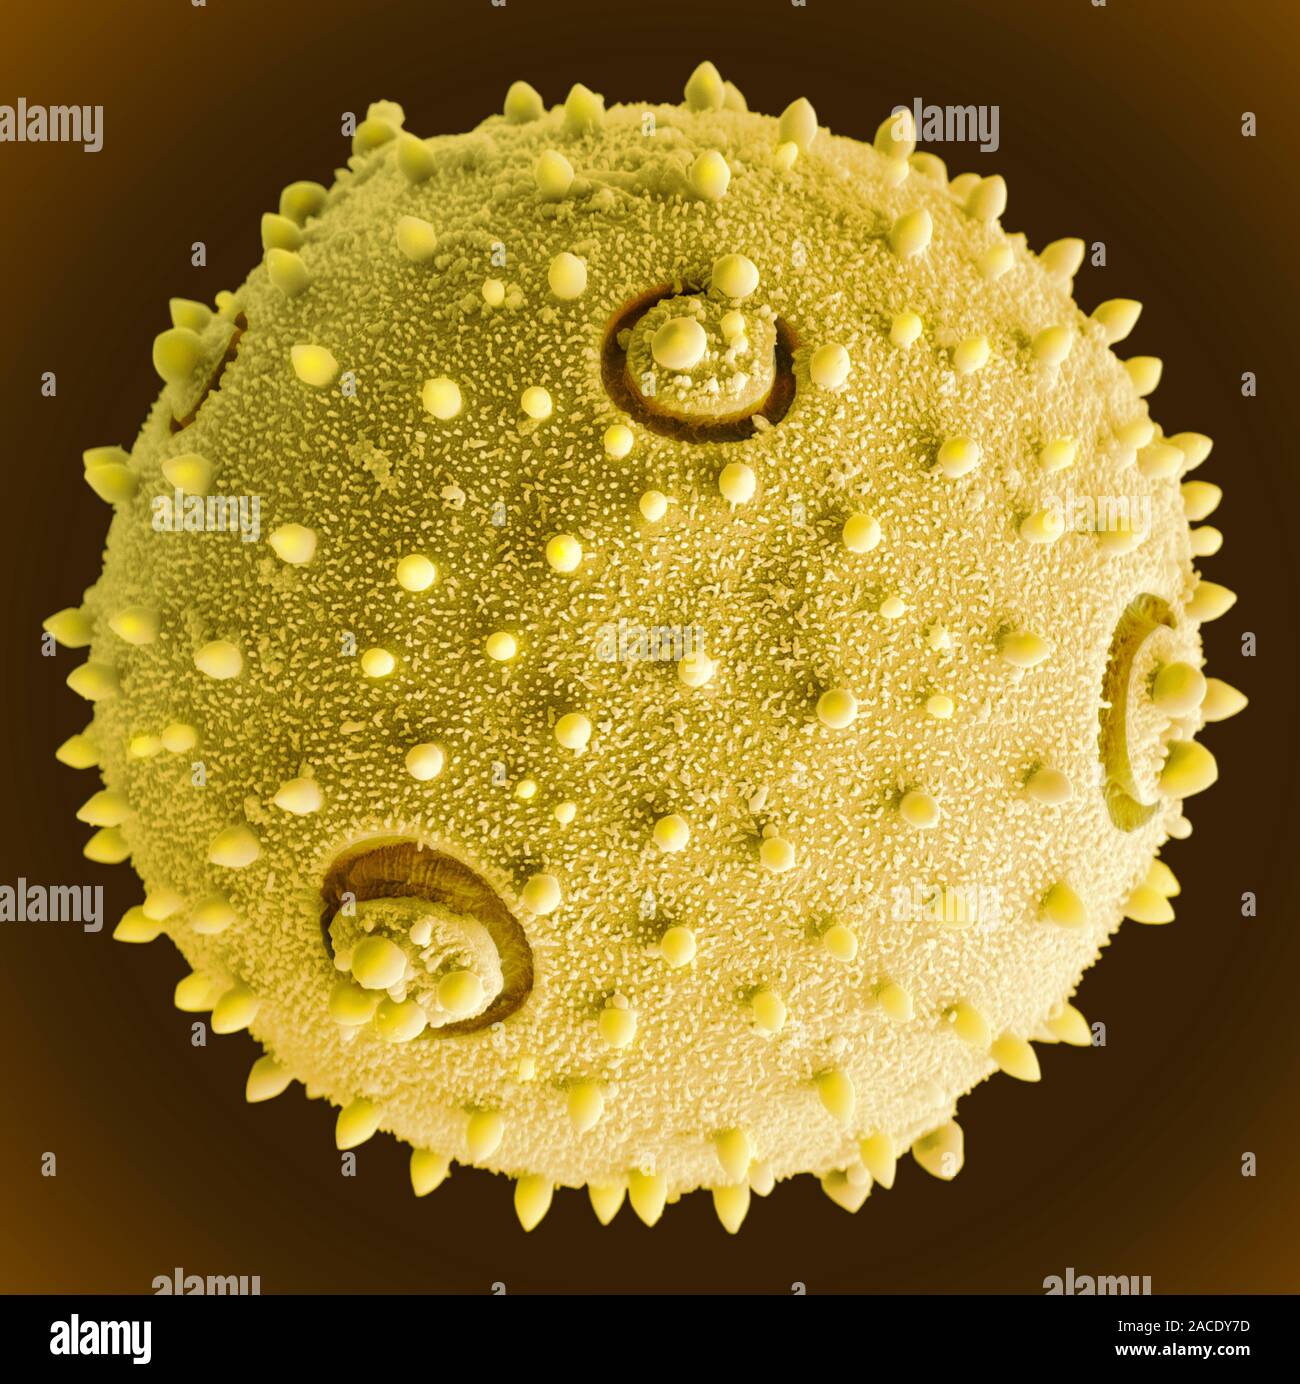 Как выглядит пыльца. Пыльца сосны микроскоп. Пыльца амброзии под микроскопом. Пыльца сосны микропрепарат. Пыльцевое зерно микроскоп.